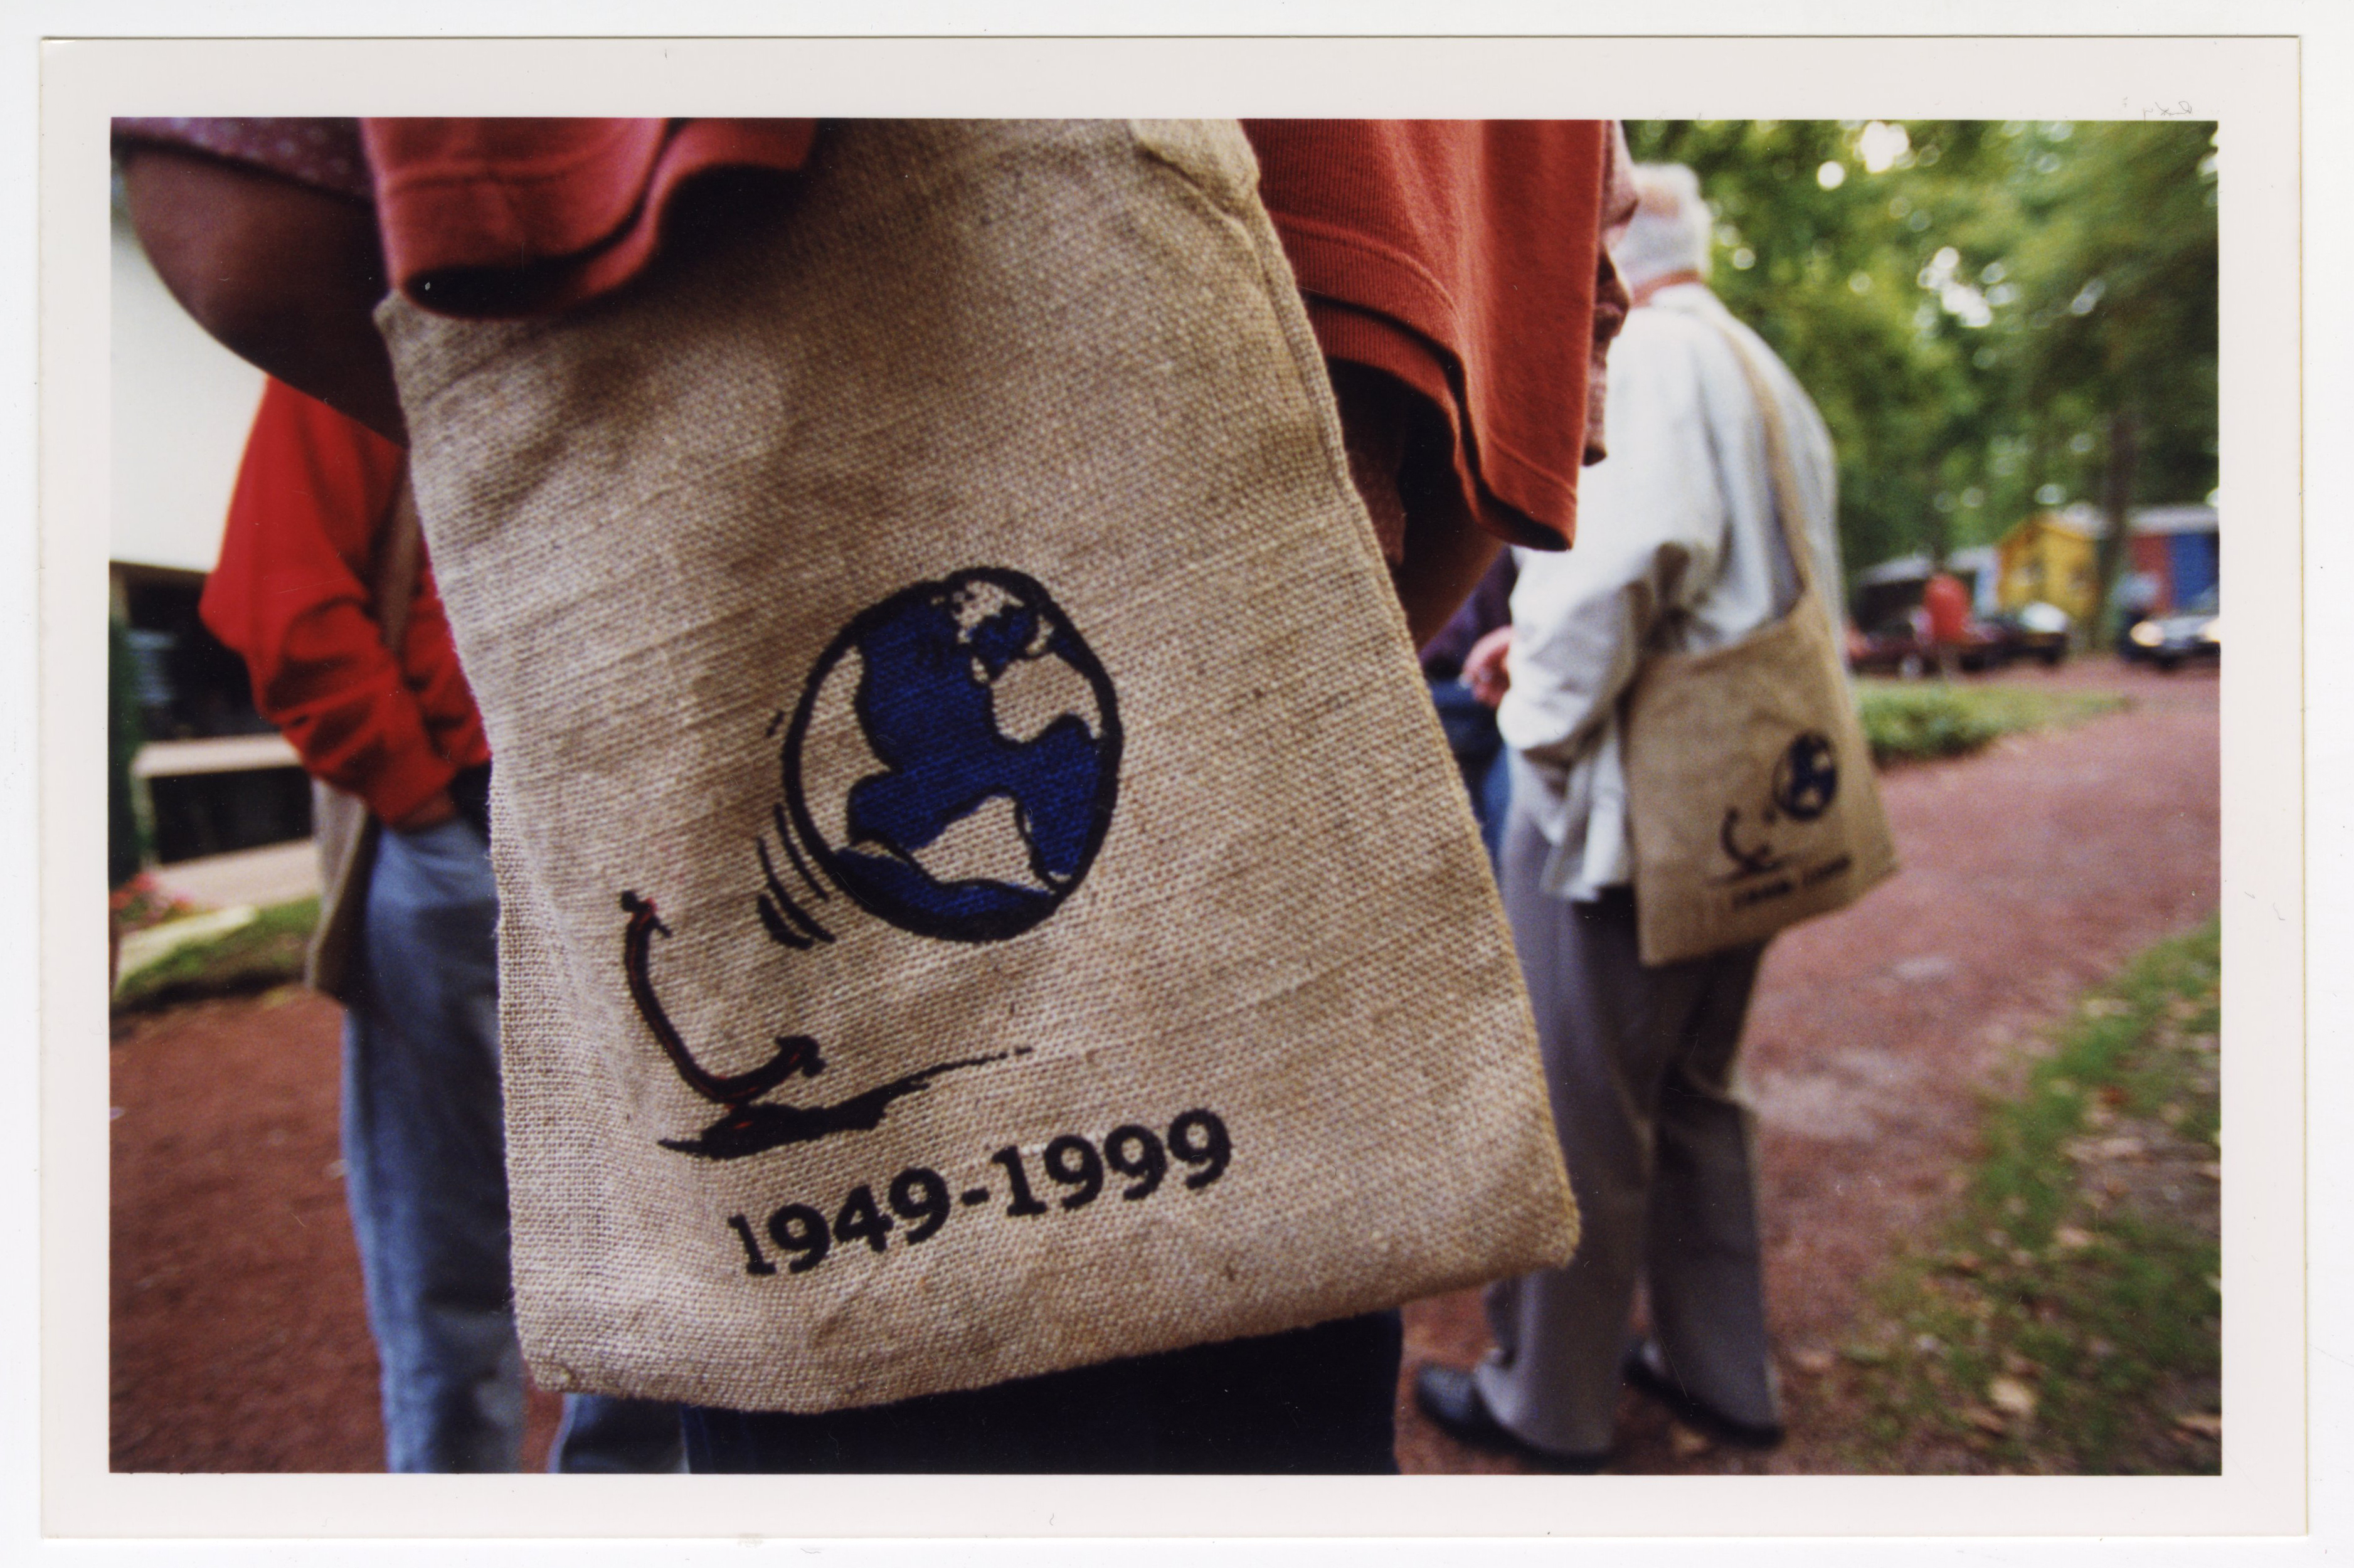 Photographie d'un tote bag avec le logo de l'assemblée Mondiale de 1999, un globe terrestre qui s'échappe de son support. En dessous, les dates ''1949-1999" rappellent le cinquantenaire de la création d'Emmaüs International.